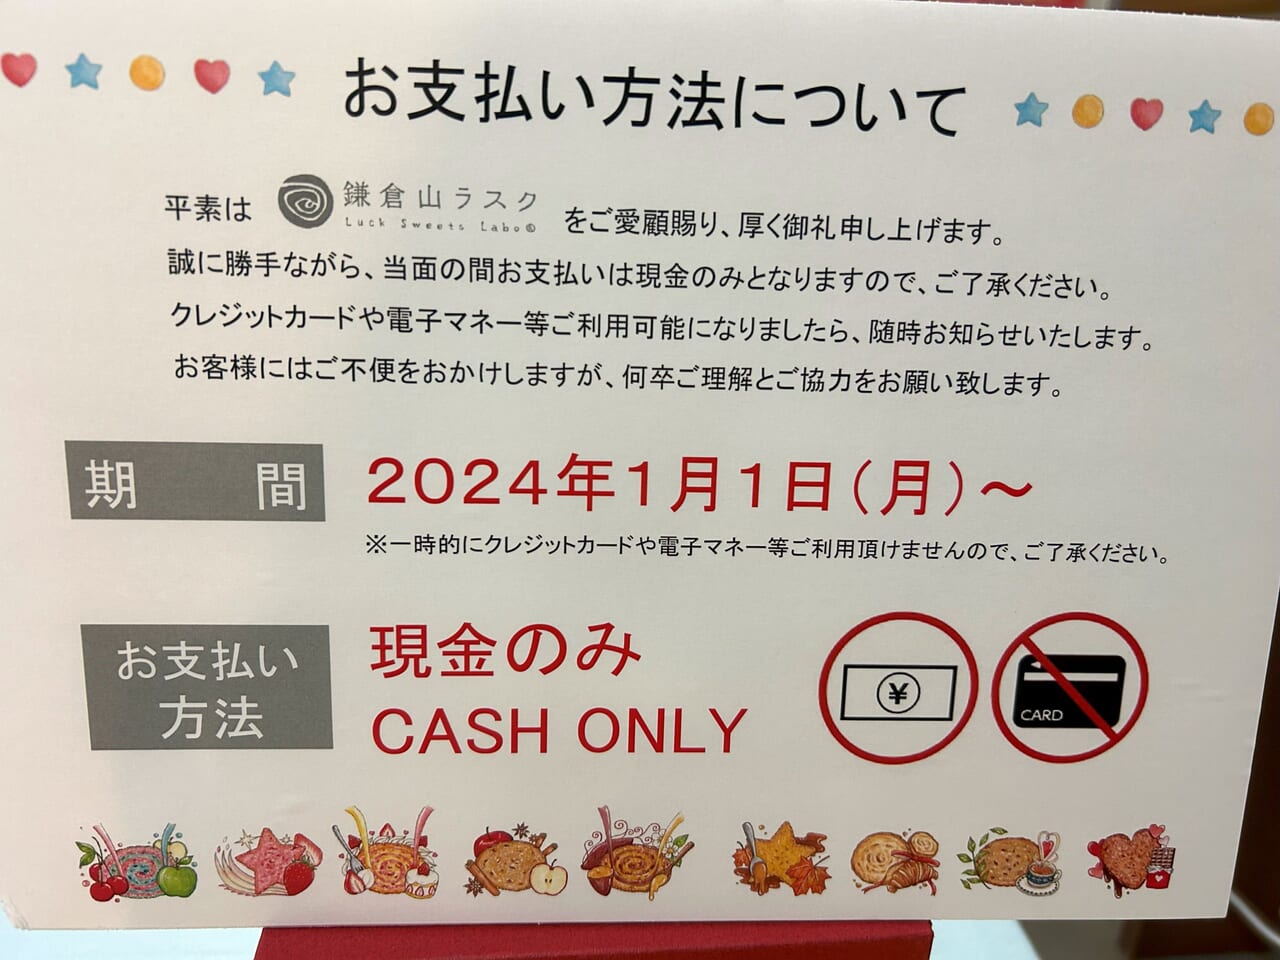 鎌倉山ラスクポップアップショップ支払い方法